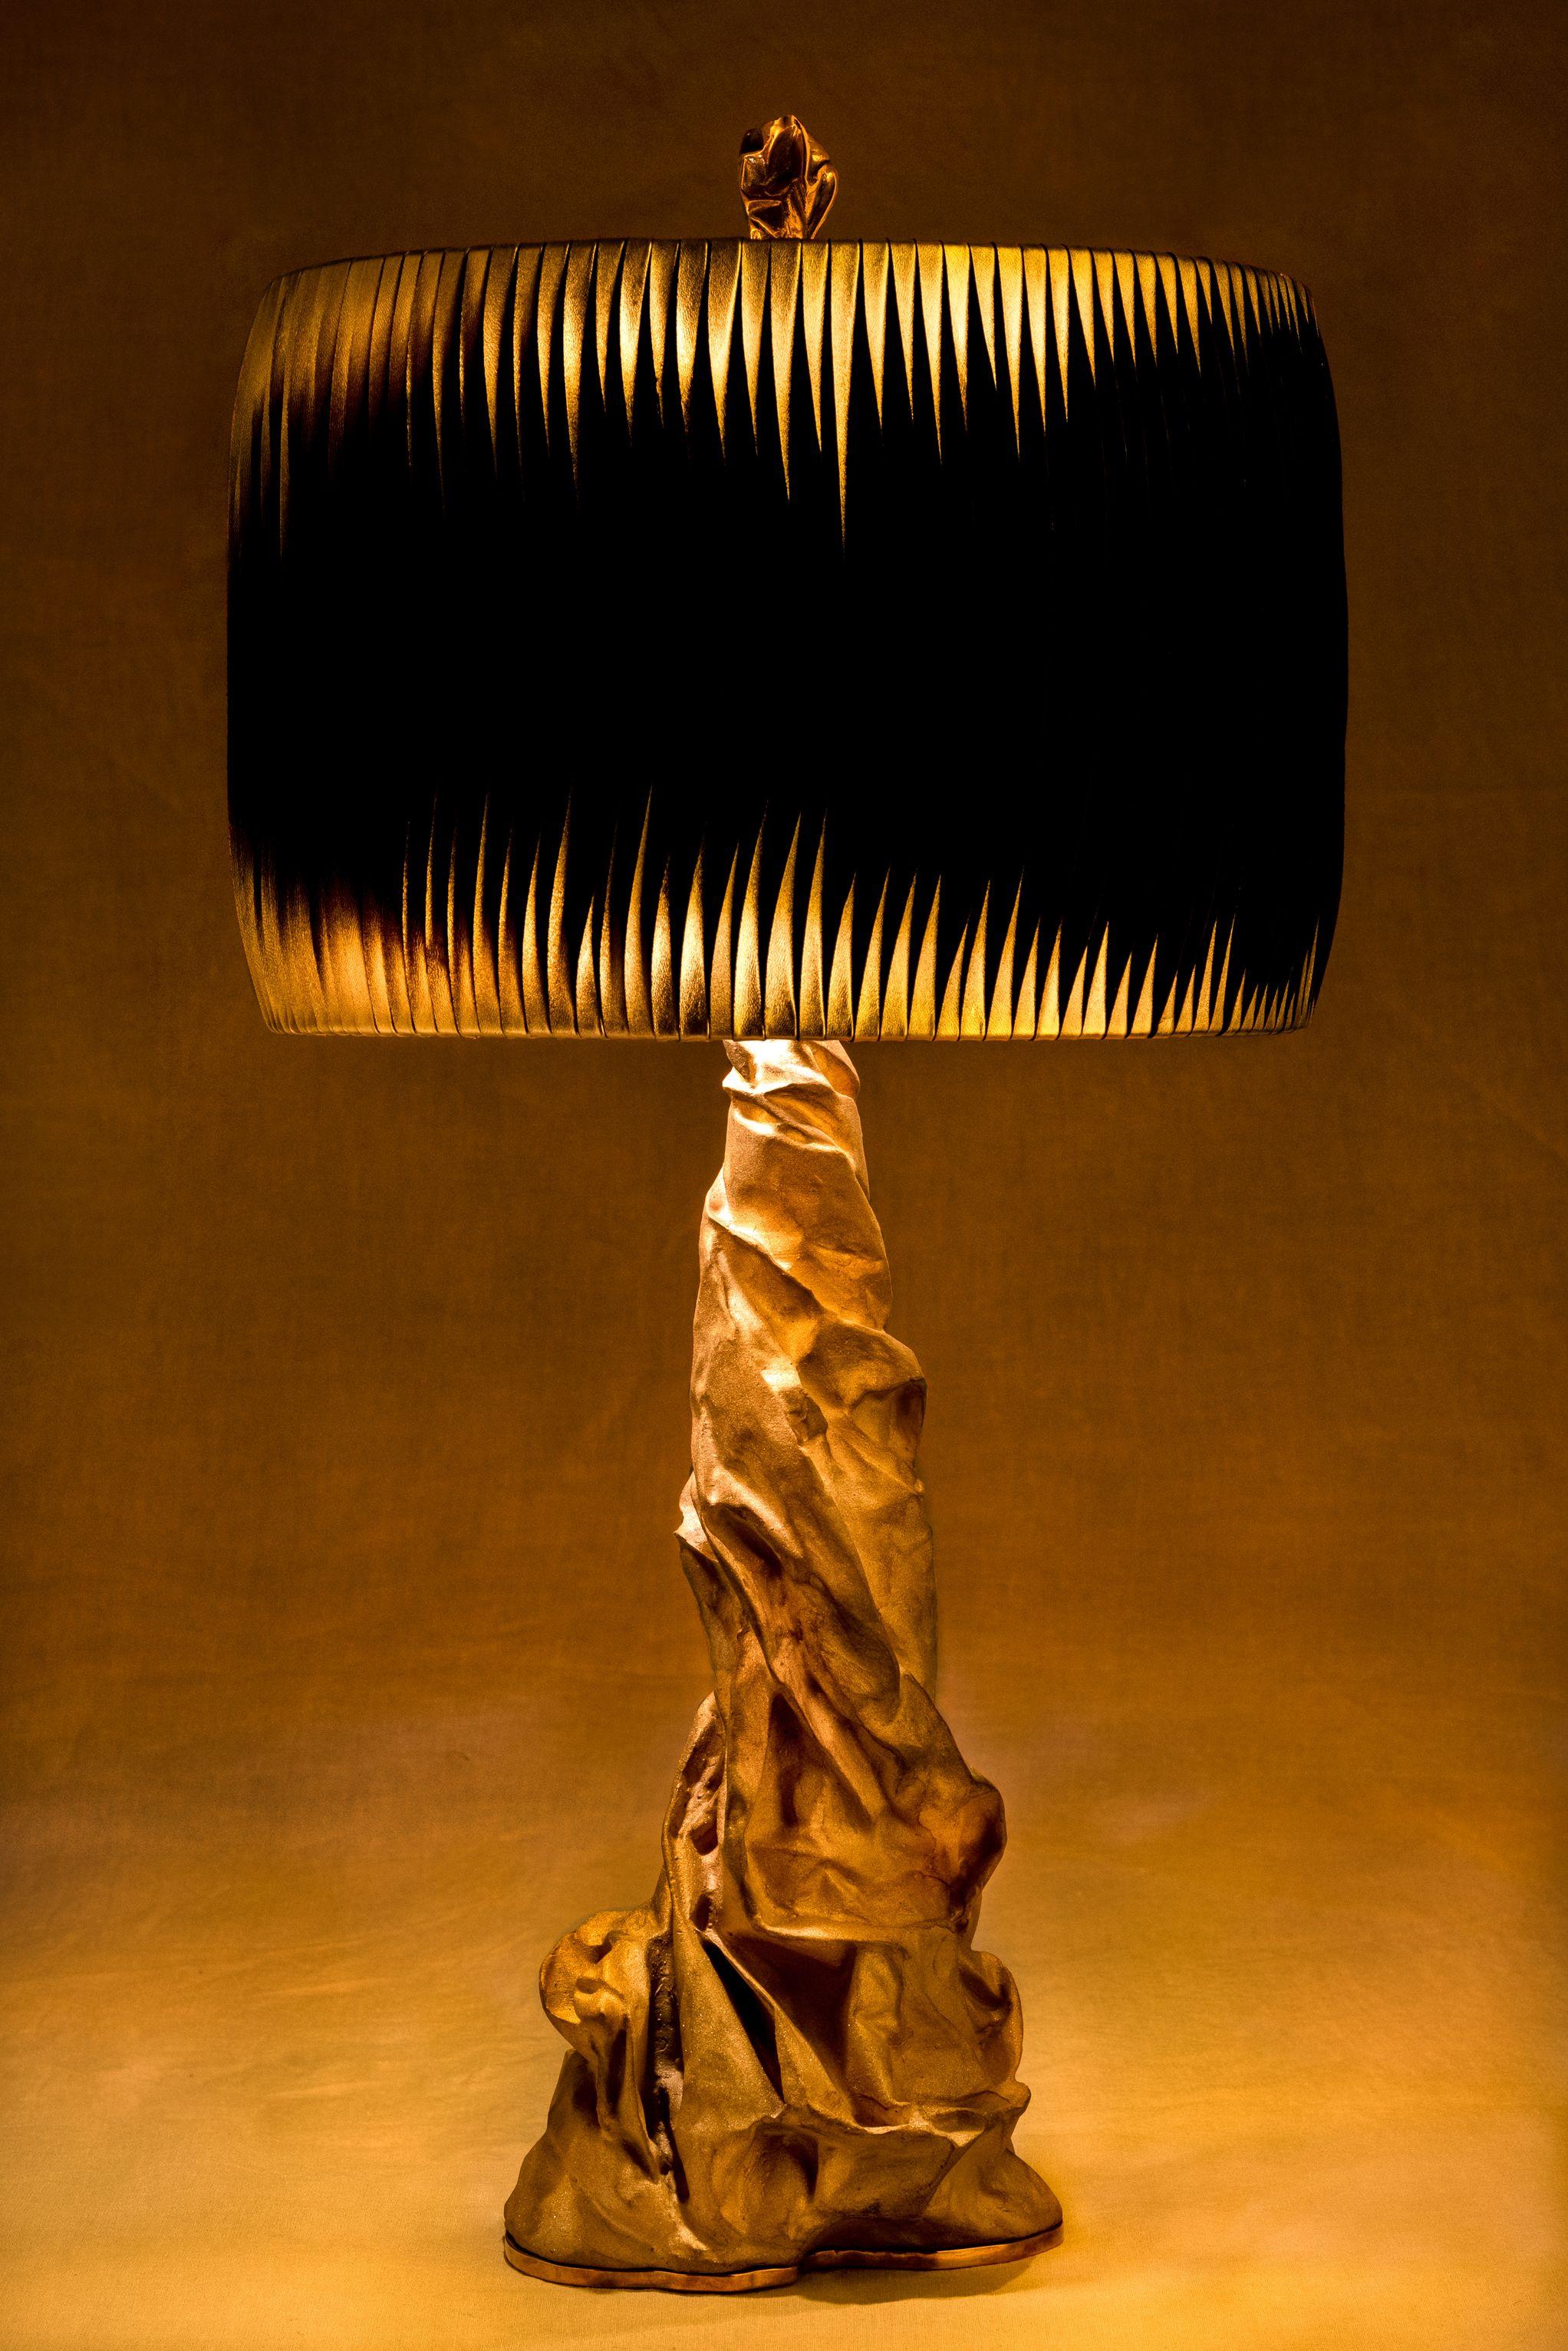 Lampe à poser Charta aura par Studio Palatin
Fabrication artisanale, édition limitée
Dimensions : H 75 x D 35 cm
Matériaux : lumière en bronze, dorure 24K, cuir noir/doré.

Charta Nera est la cousine sombre et mystérieuse de la lampe de table Charta